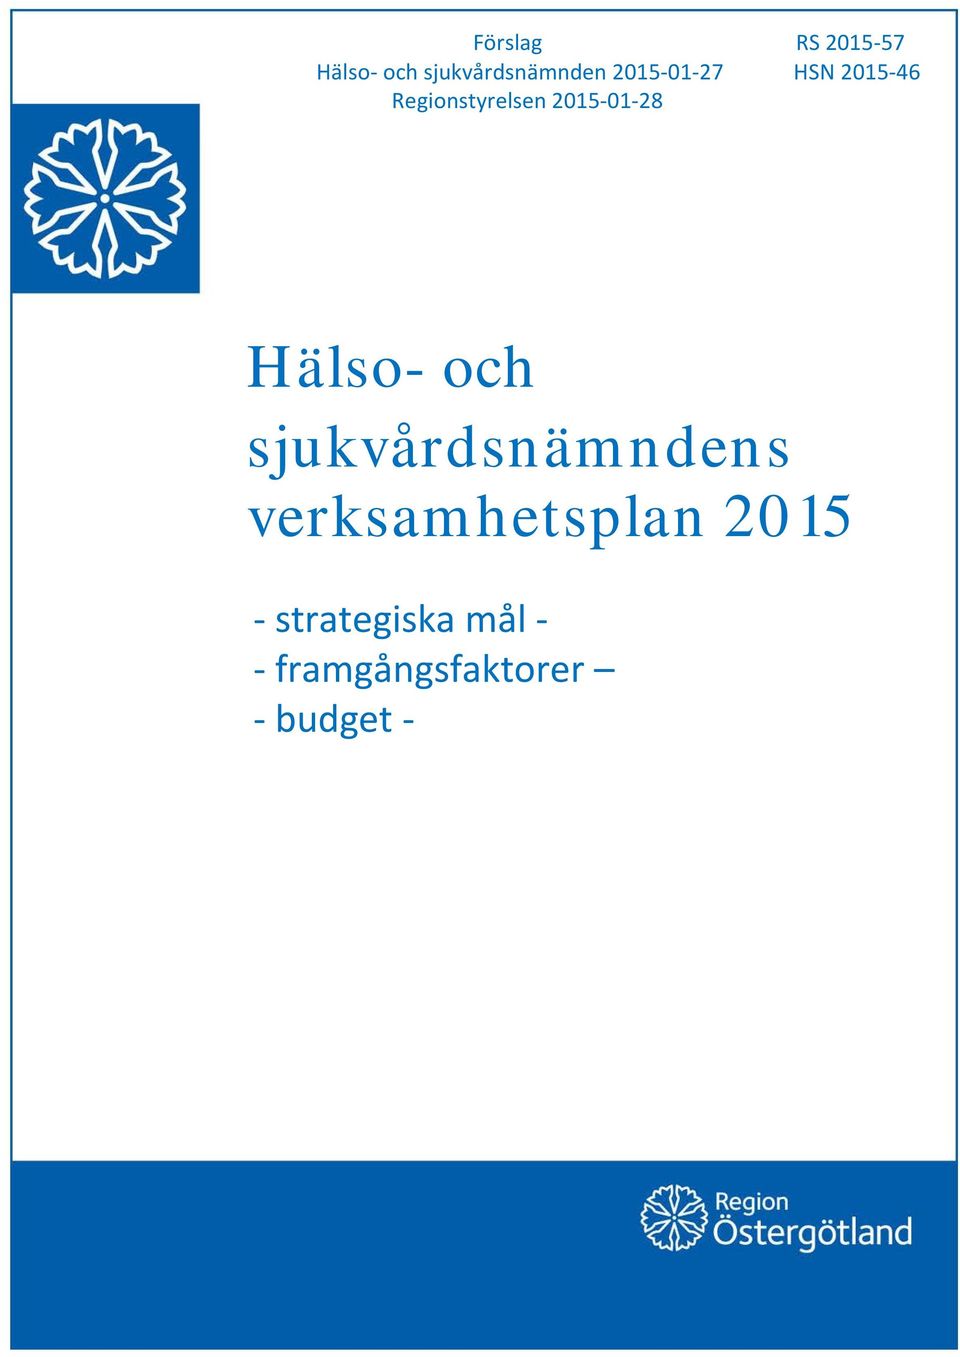 Hälso- och sjukvårdsnämndens verksamhetsplan 2015